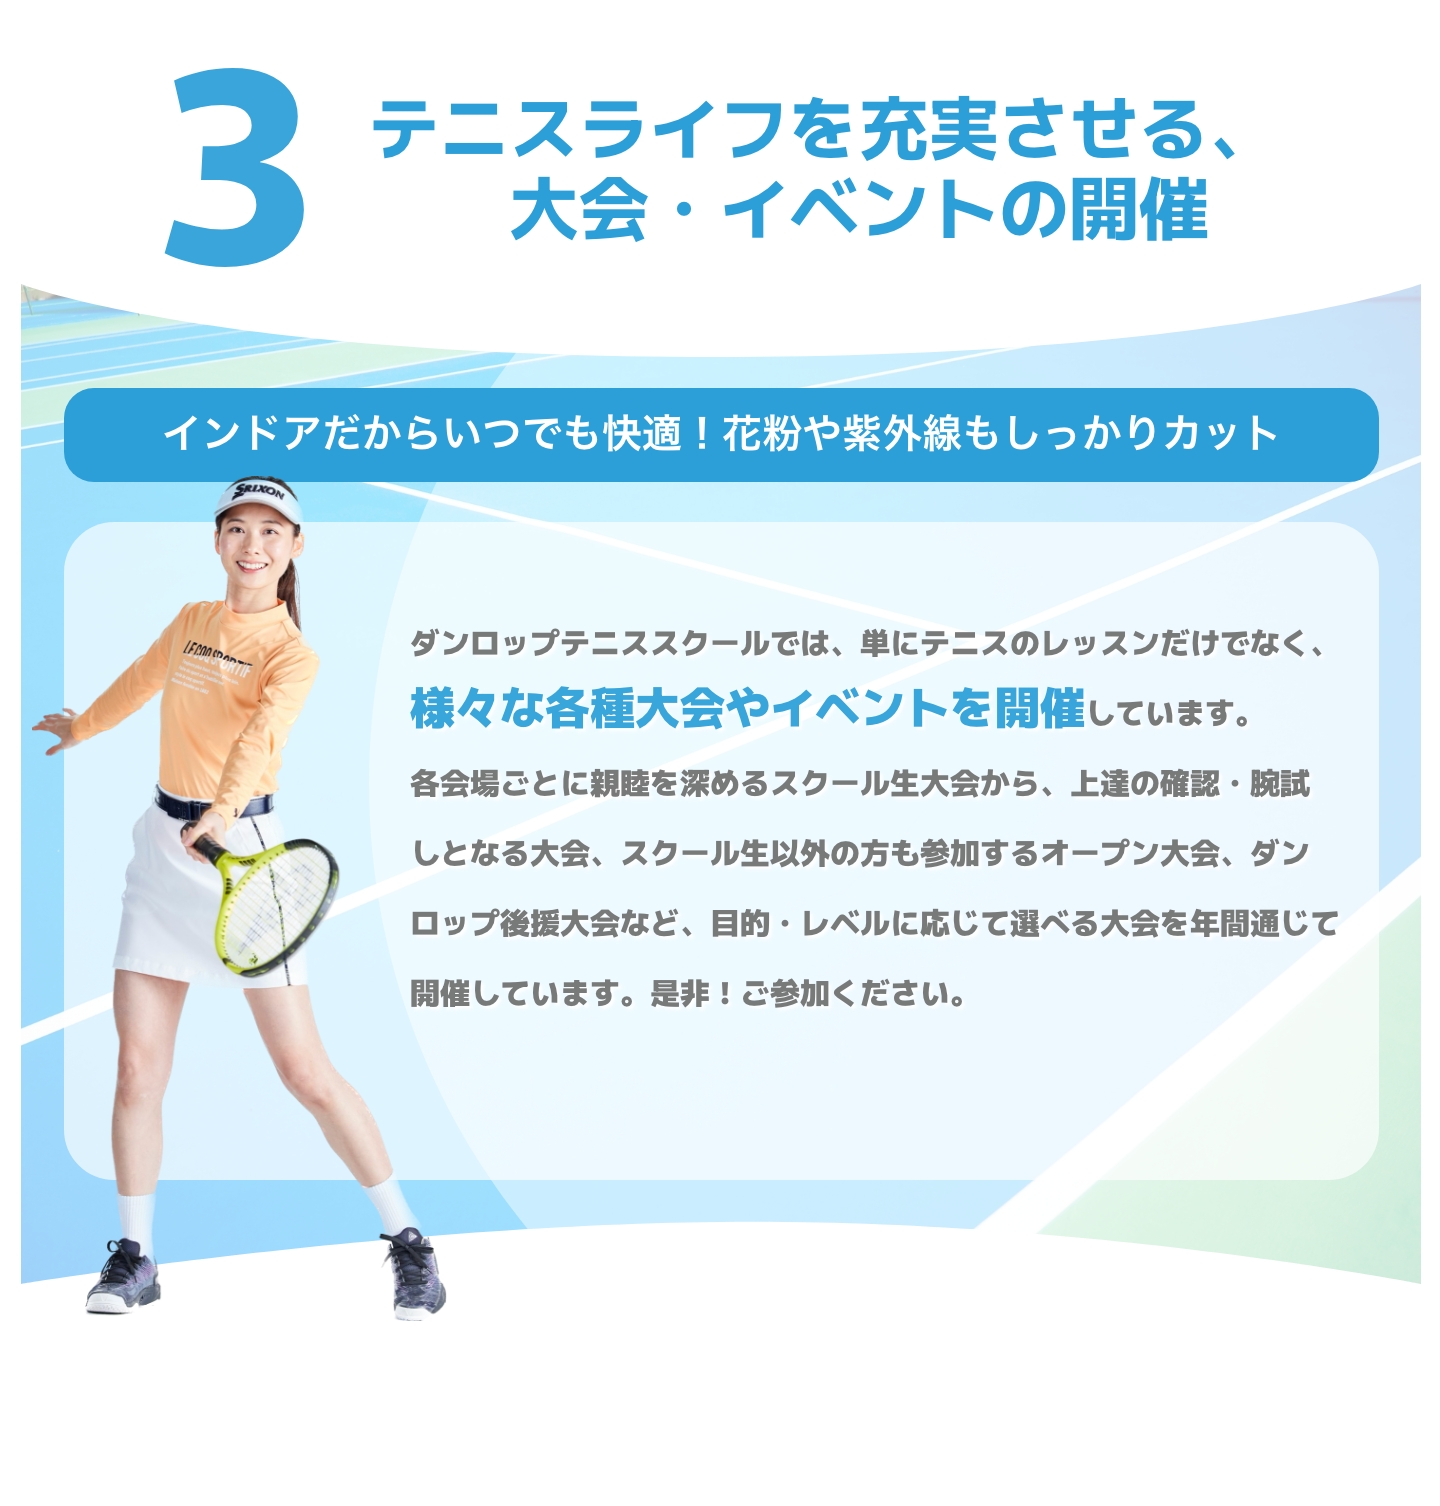 テニスライフを充実させる、大会・イベントの開催